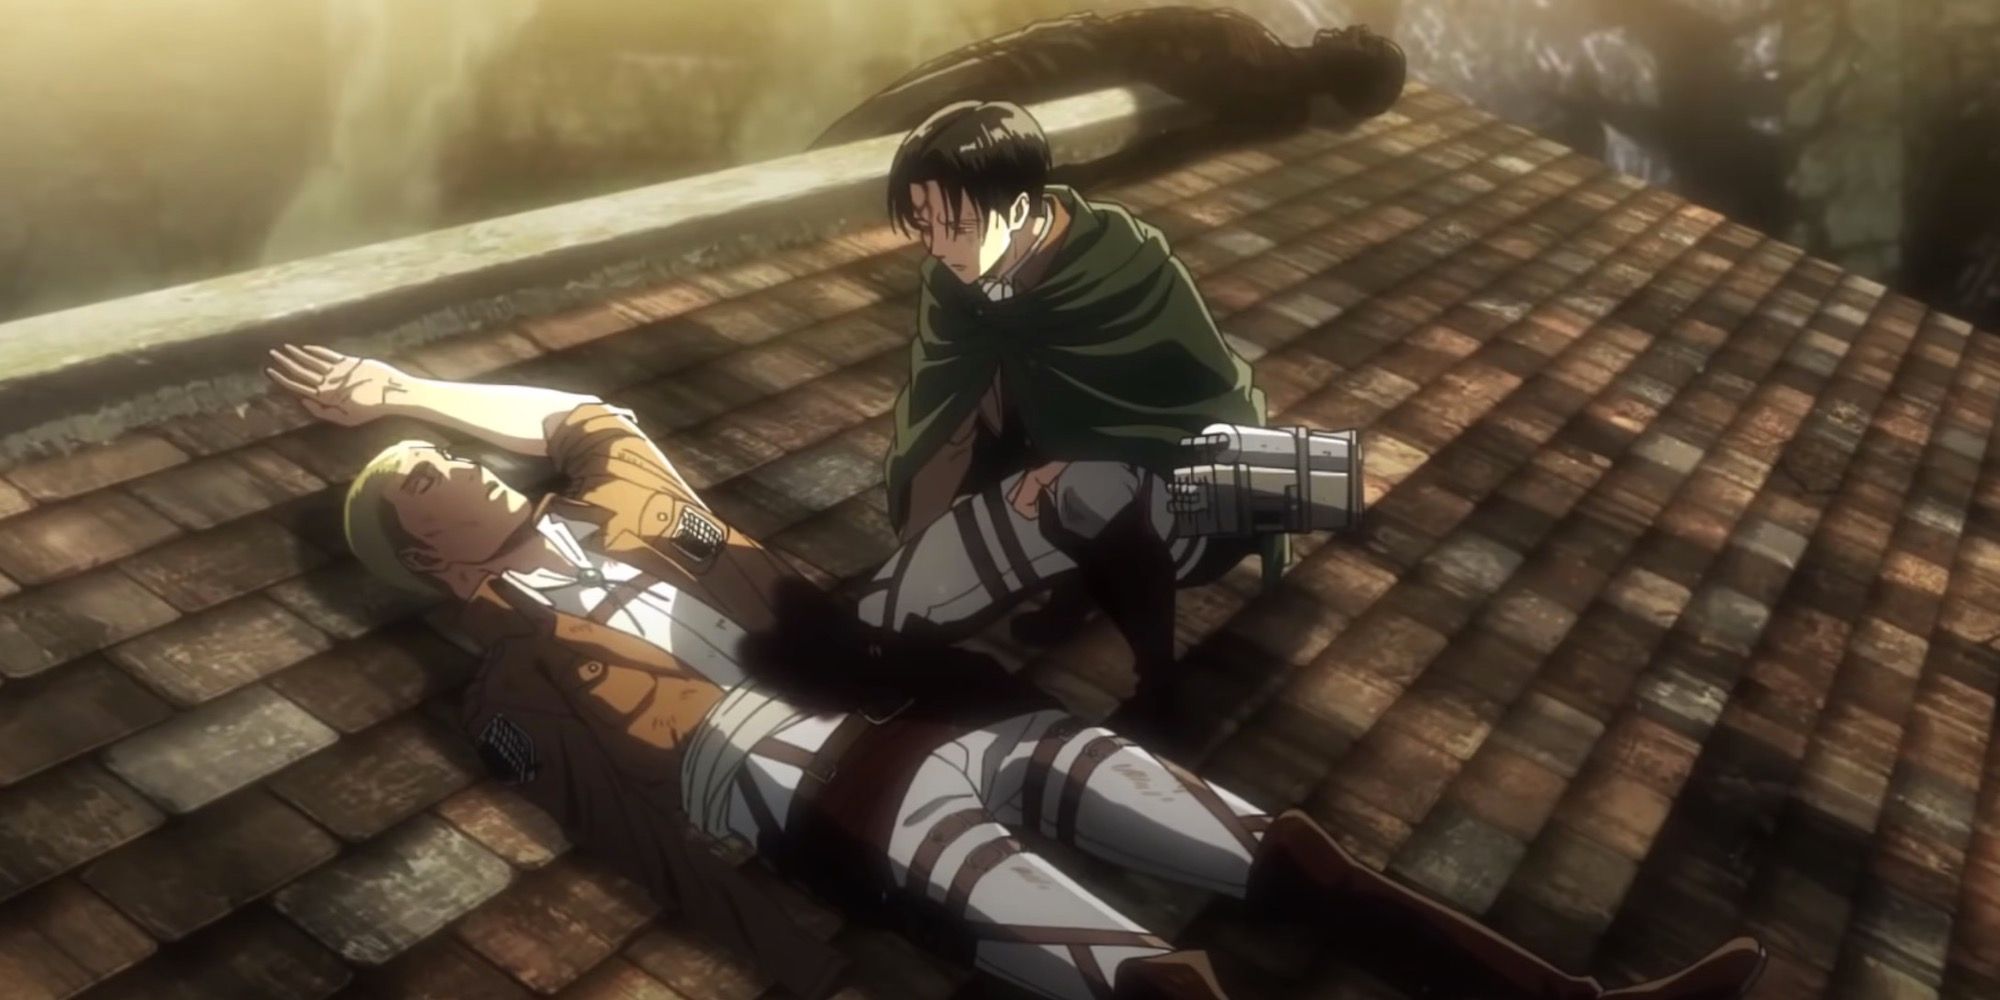 Erwin dying in Shiganshina